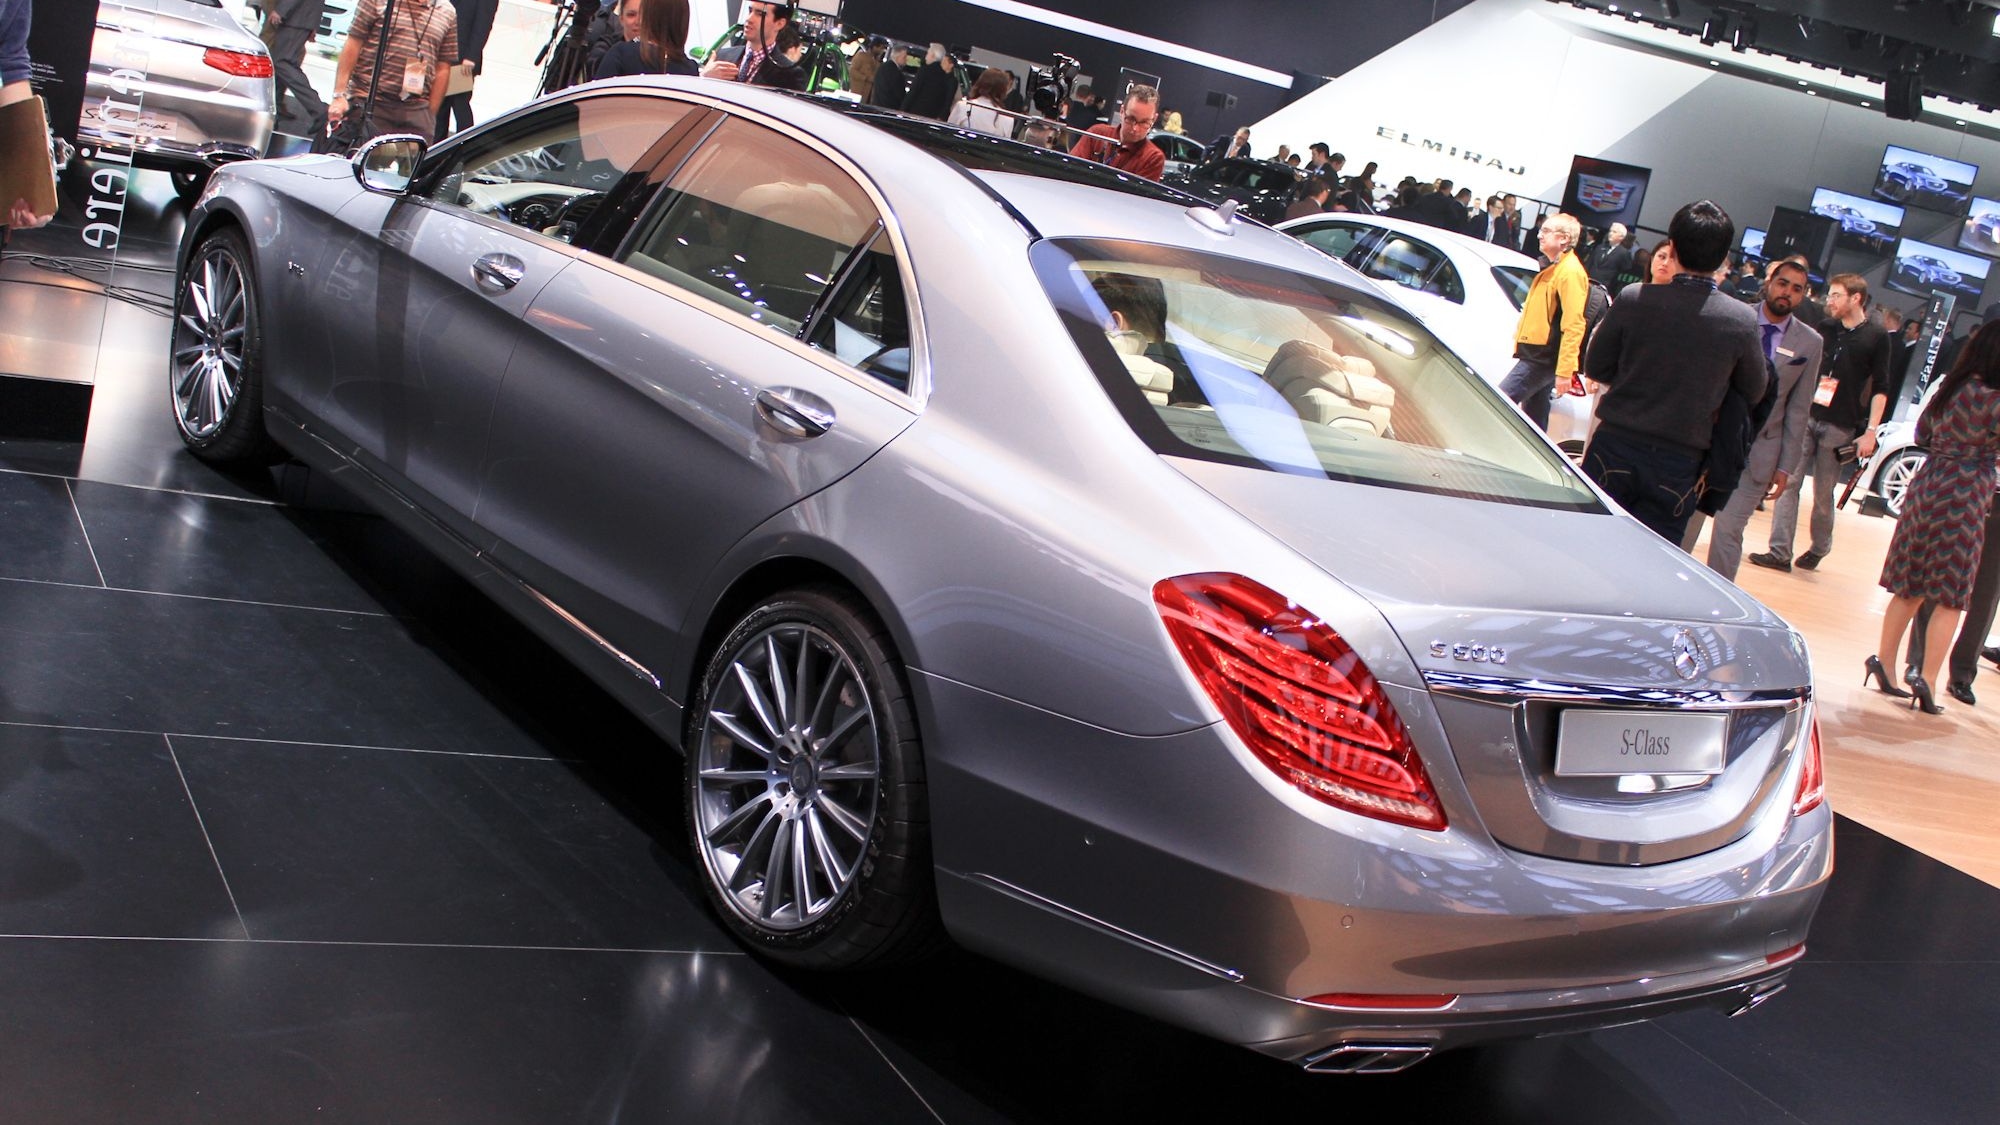 2015 Mercedes-Benz S600 live photos, 2014 Detroit Auto Show